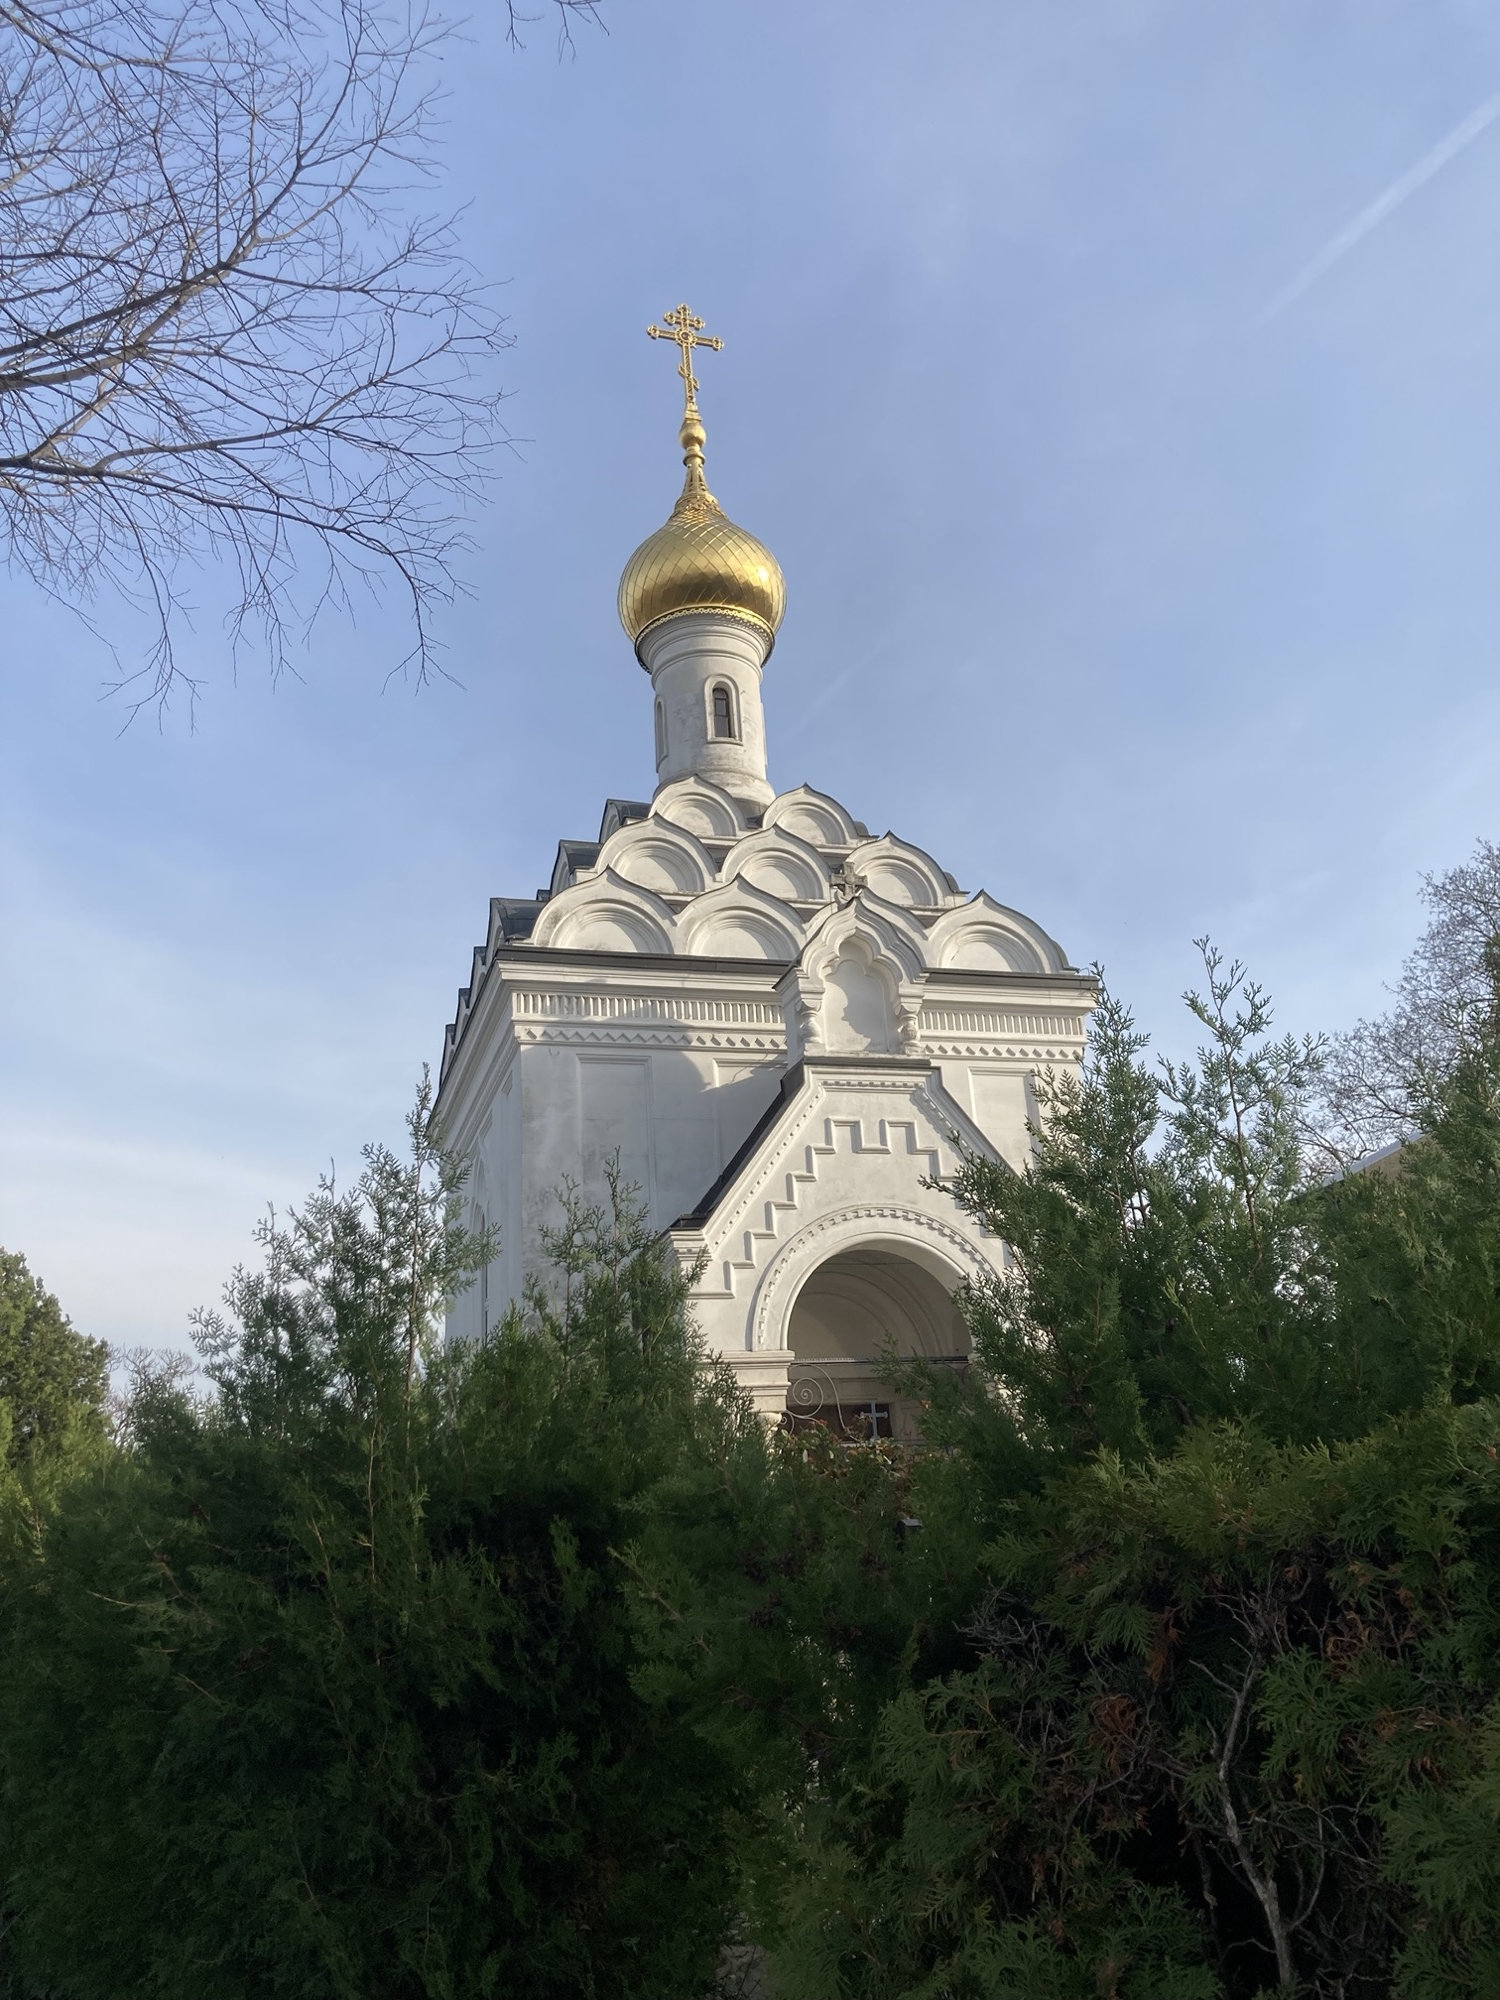 russisch-orthodoxe Lazarus-Kapelle, ein weißes Gebäude, das Dach besteht aus einer Art Schuppen und wird von einem einzelnen Turm mit einer goldenen Kuppel und dem orthodoxen Kreuz mit den zwei Querbalken gekrönt